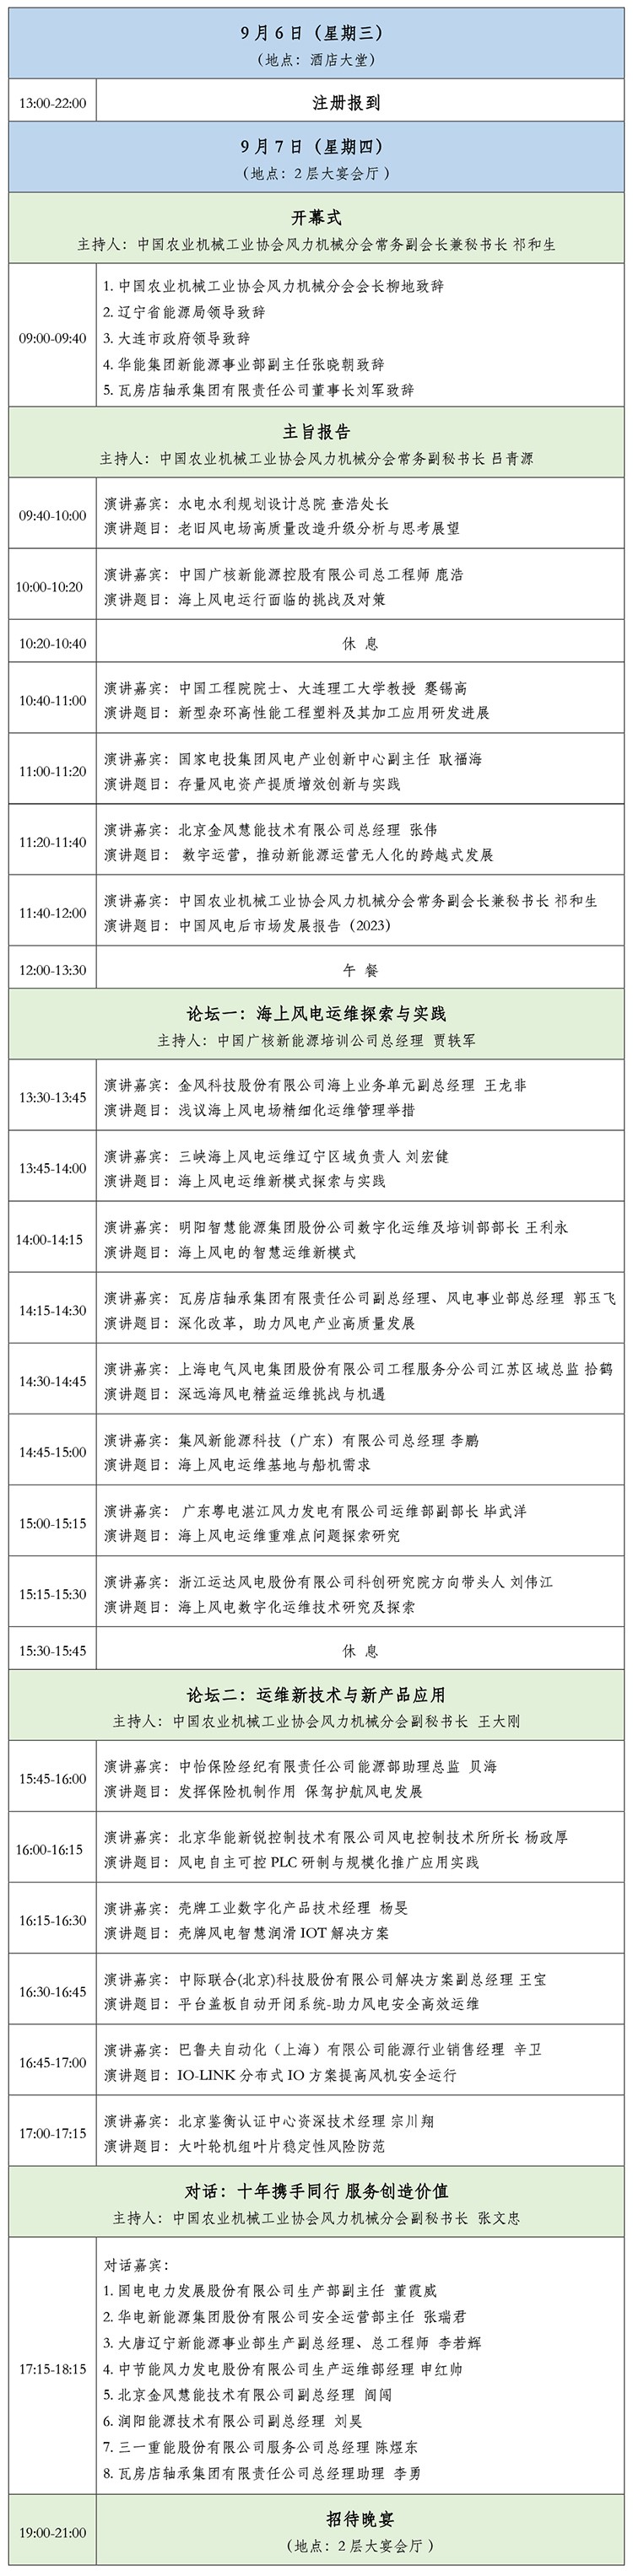 第十届中国风电后市场交流合作大会会议日程-1.jpg